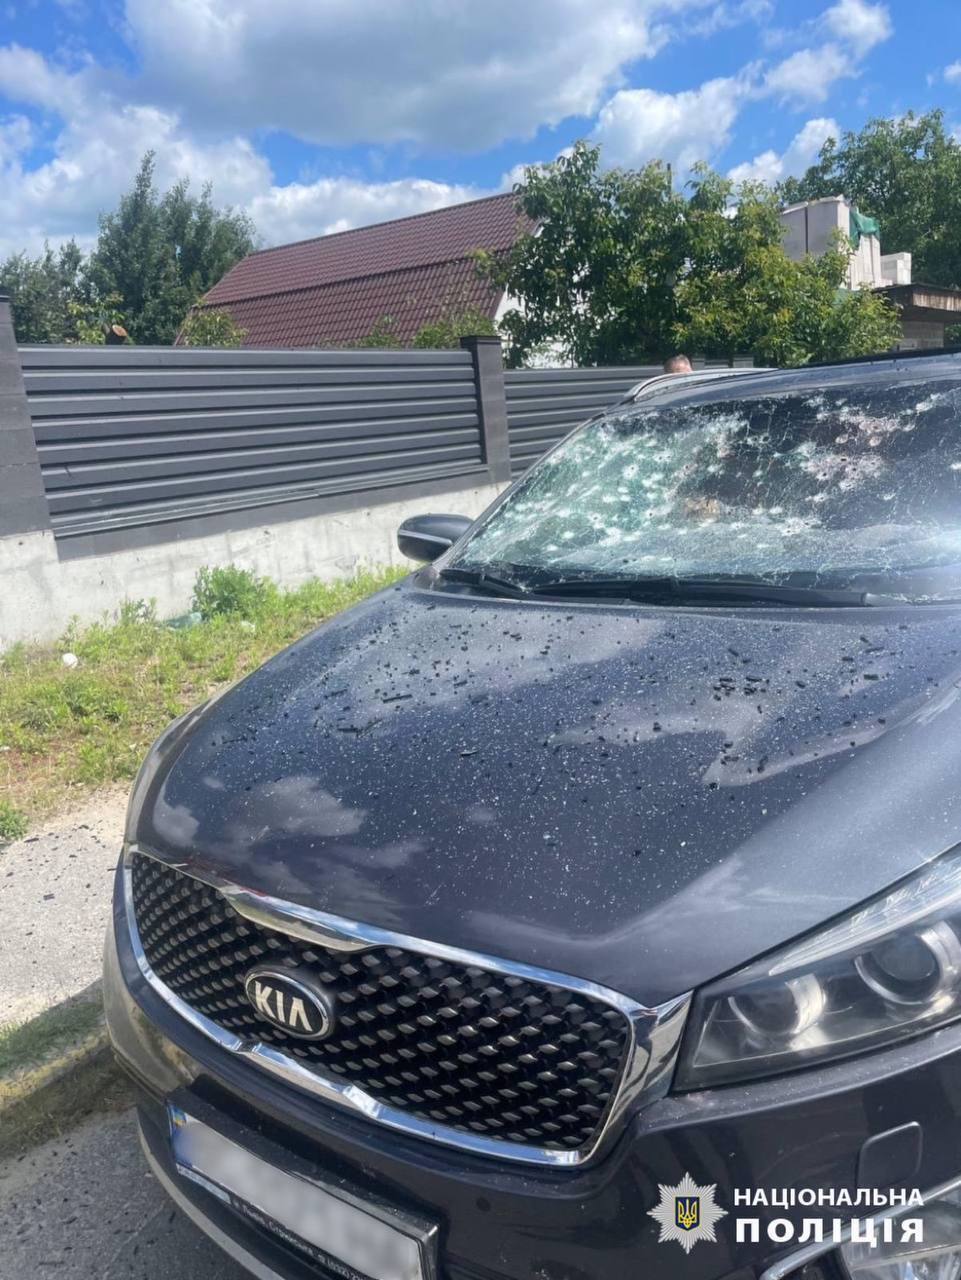 Требовал у водителя везти к границе с Беларусью: под Киевом пассажир взорвал в машине гранату. Все подробности